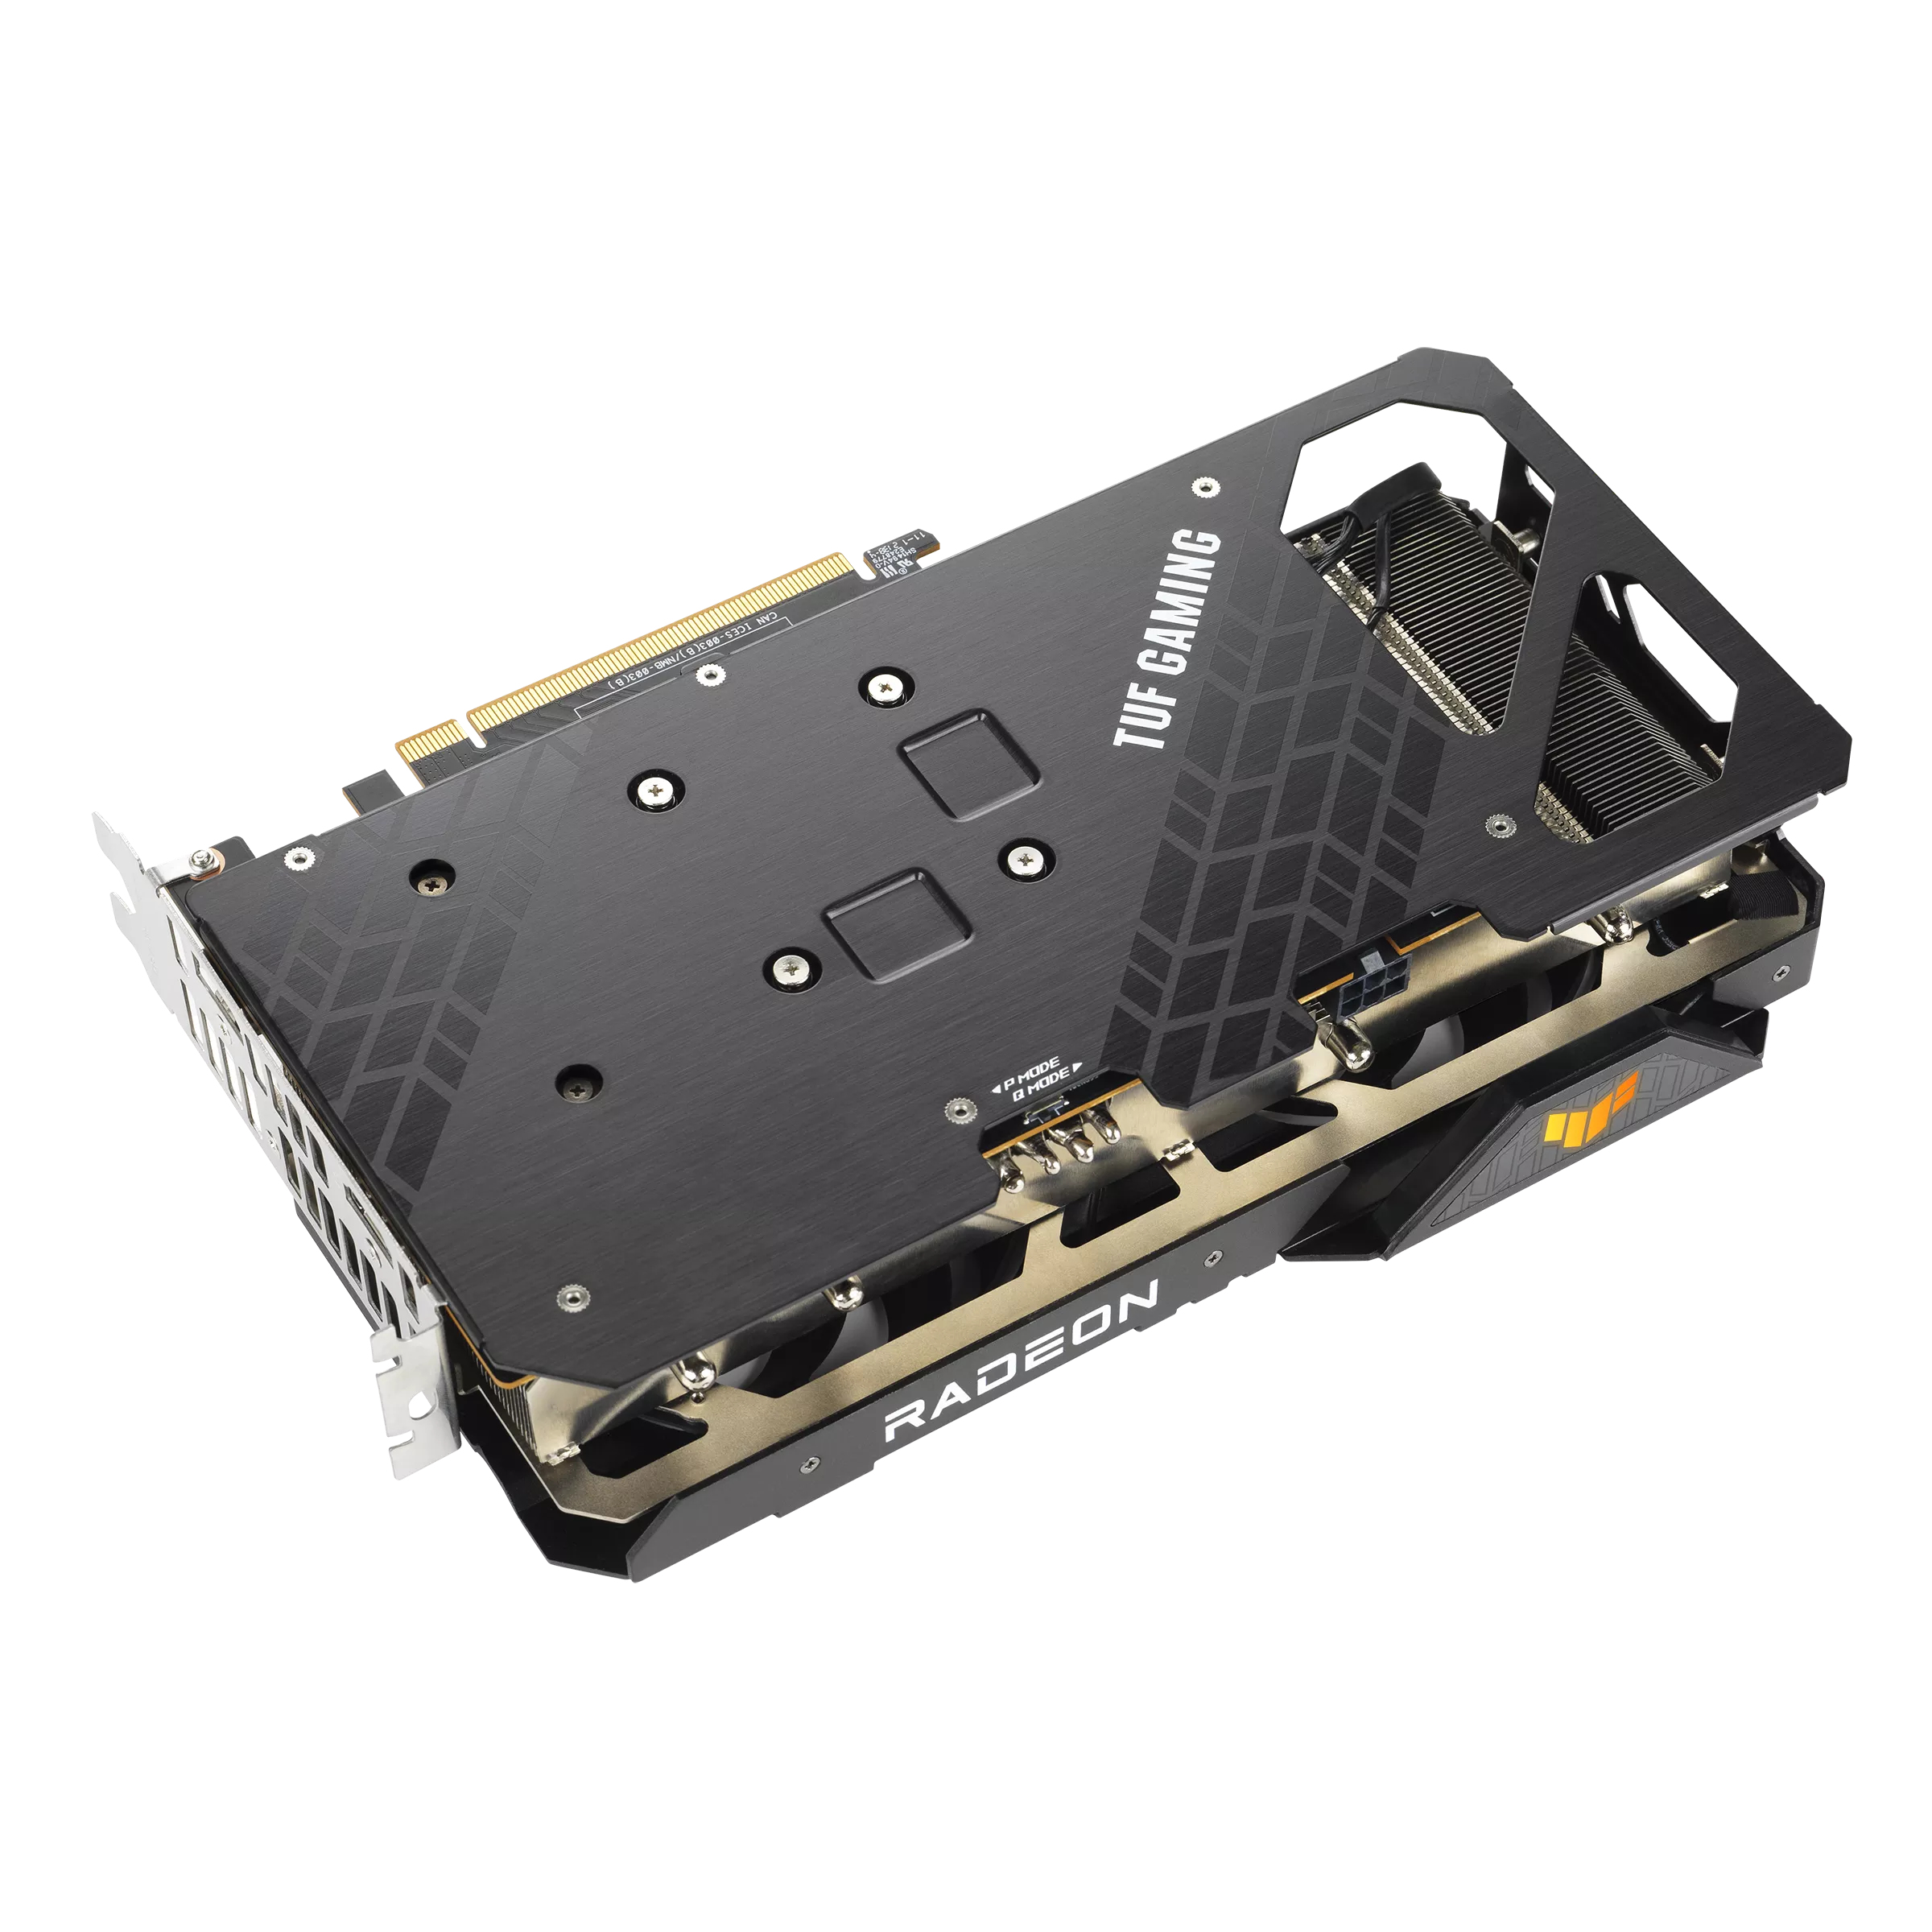 MSI Gaming AMD Radeon RX 6500 XT 64-bit 4GB GDDR6 DP/HDMI PCIe 4